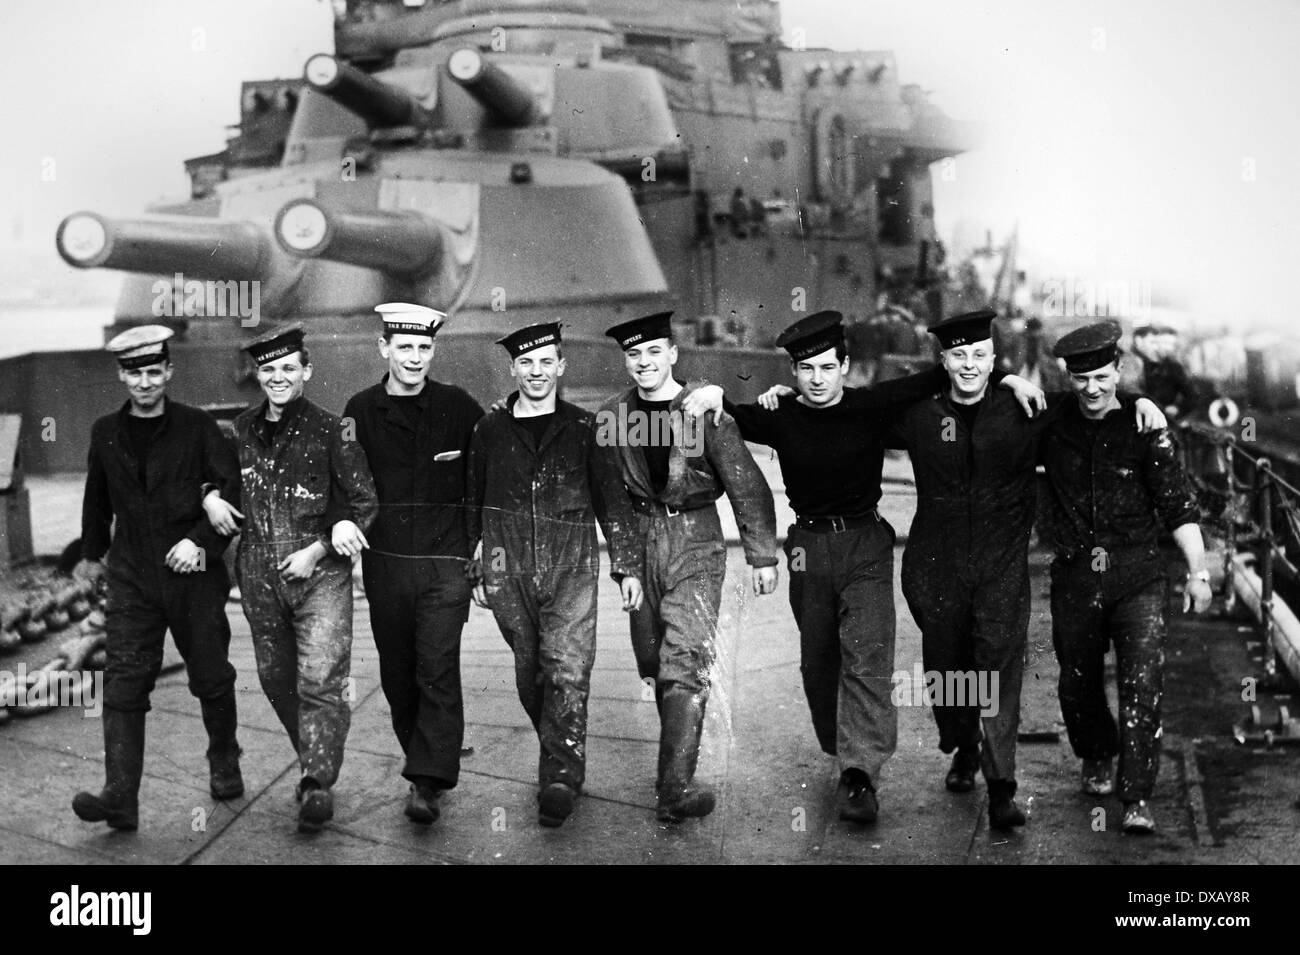 La Marine royale pendant la seconde guerre mondiale. Image peut ne pas être autorisé pour utilisation sur la couverture d'un livre au détail. Banque D'Images